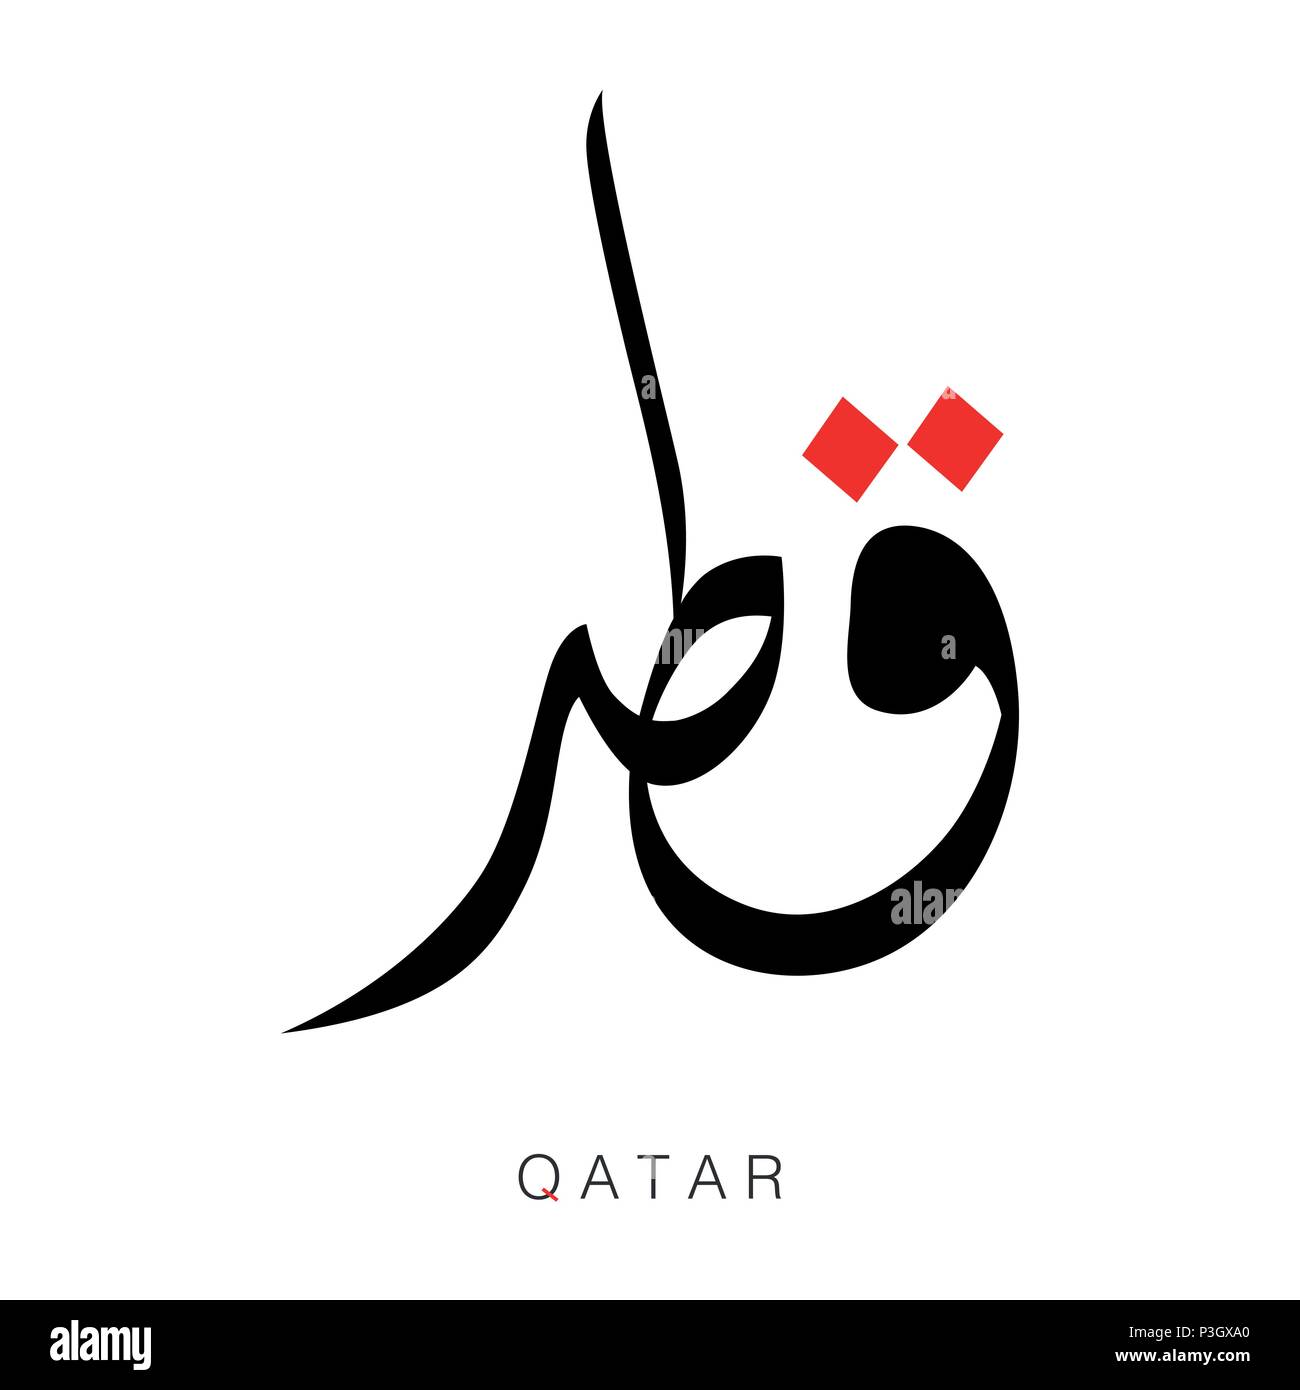 Katar Wort in arabische Kalligraphie, Arabische Kalligraphie Titel QATAR auf weißem Hintergrund - Vector Illustration. Stock Vektor